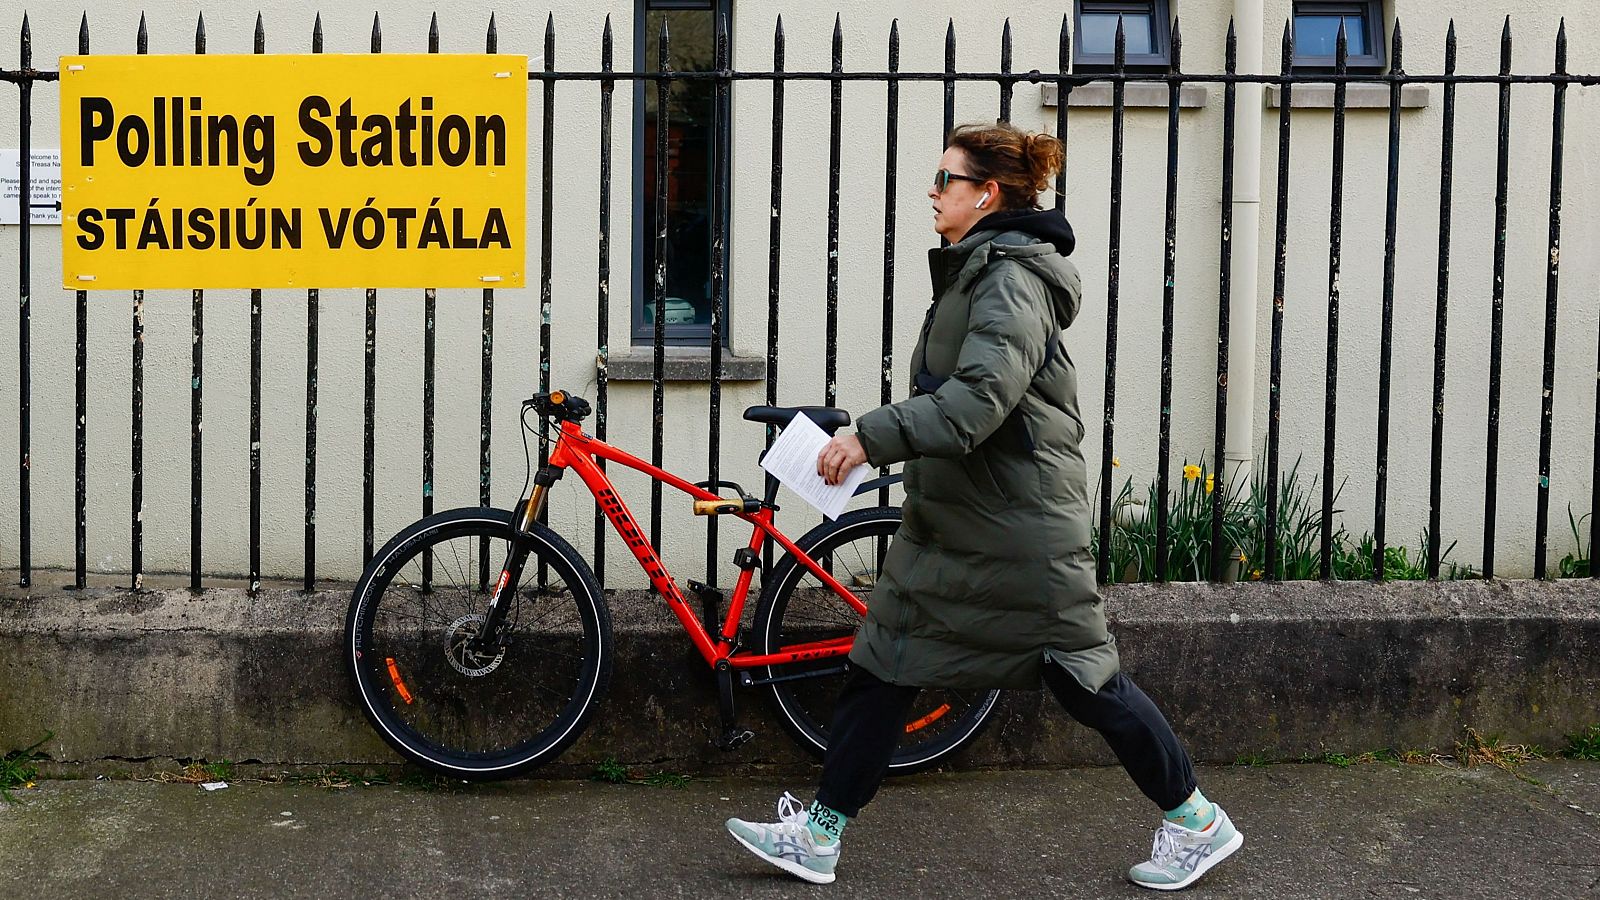 Irlanda vota para cambiar la definición de familia y papel de la mujer